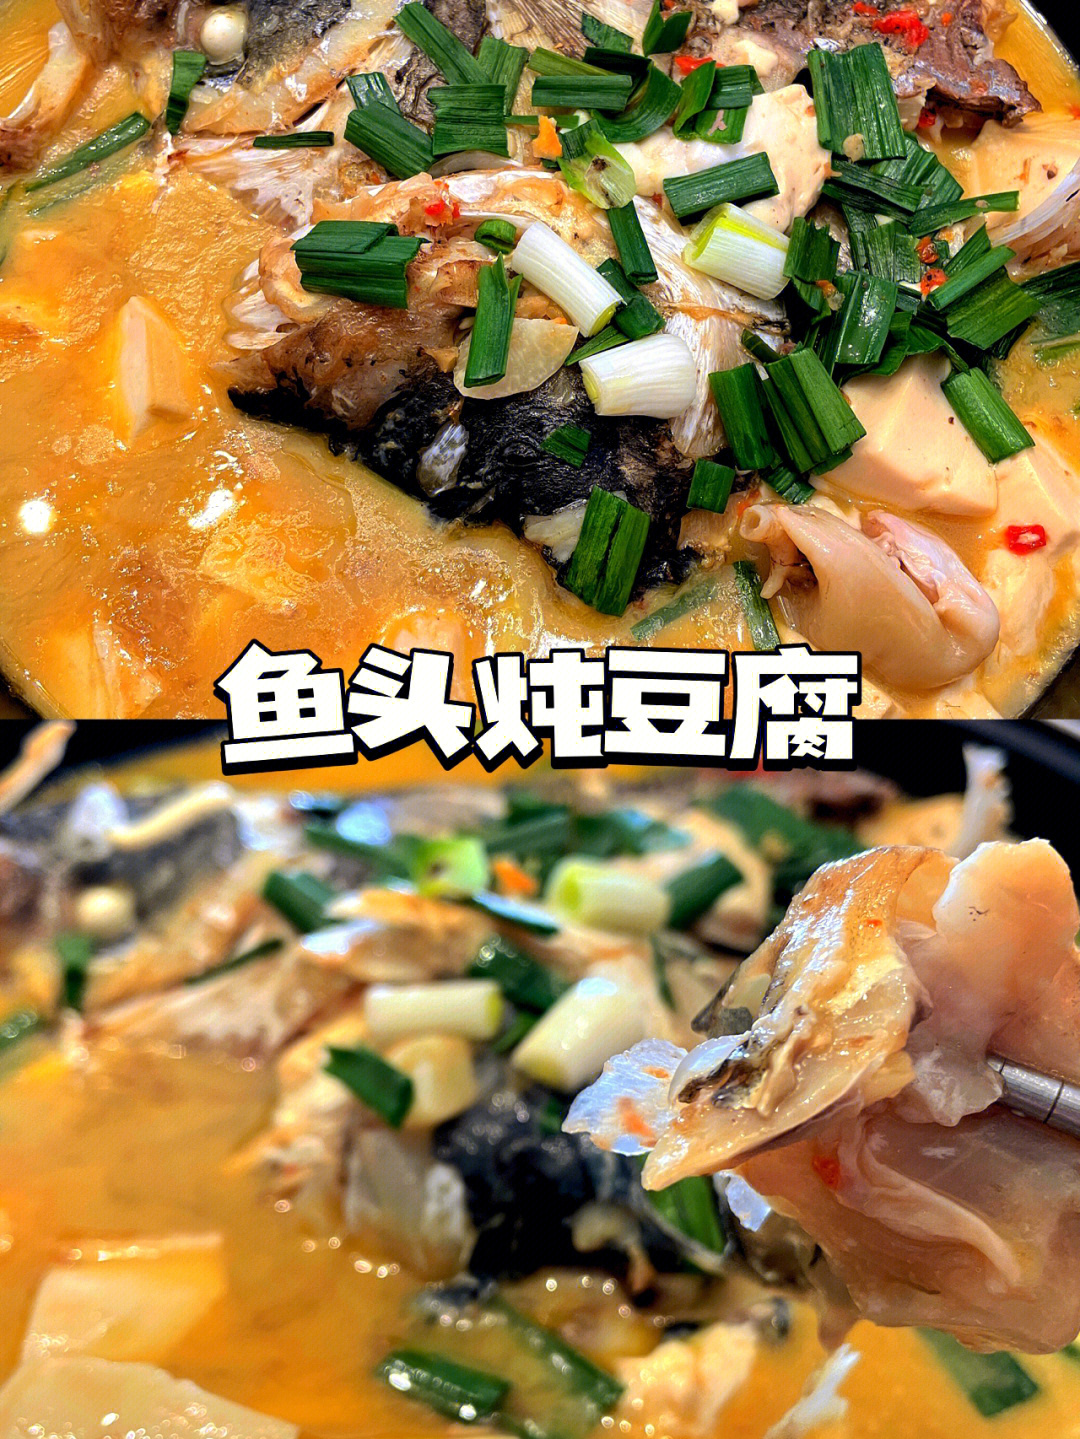 冬天来一锅热腾腾的鱼头豆腐,真的是美味极了食材:胖头鱼鱼头,嫩豆腐